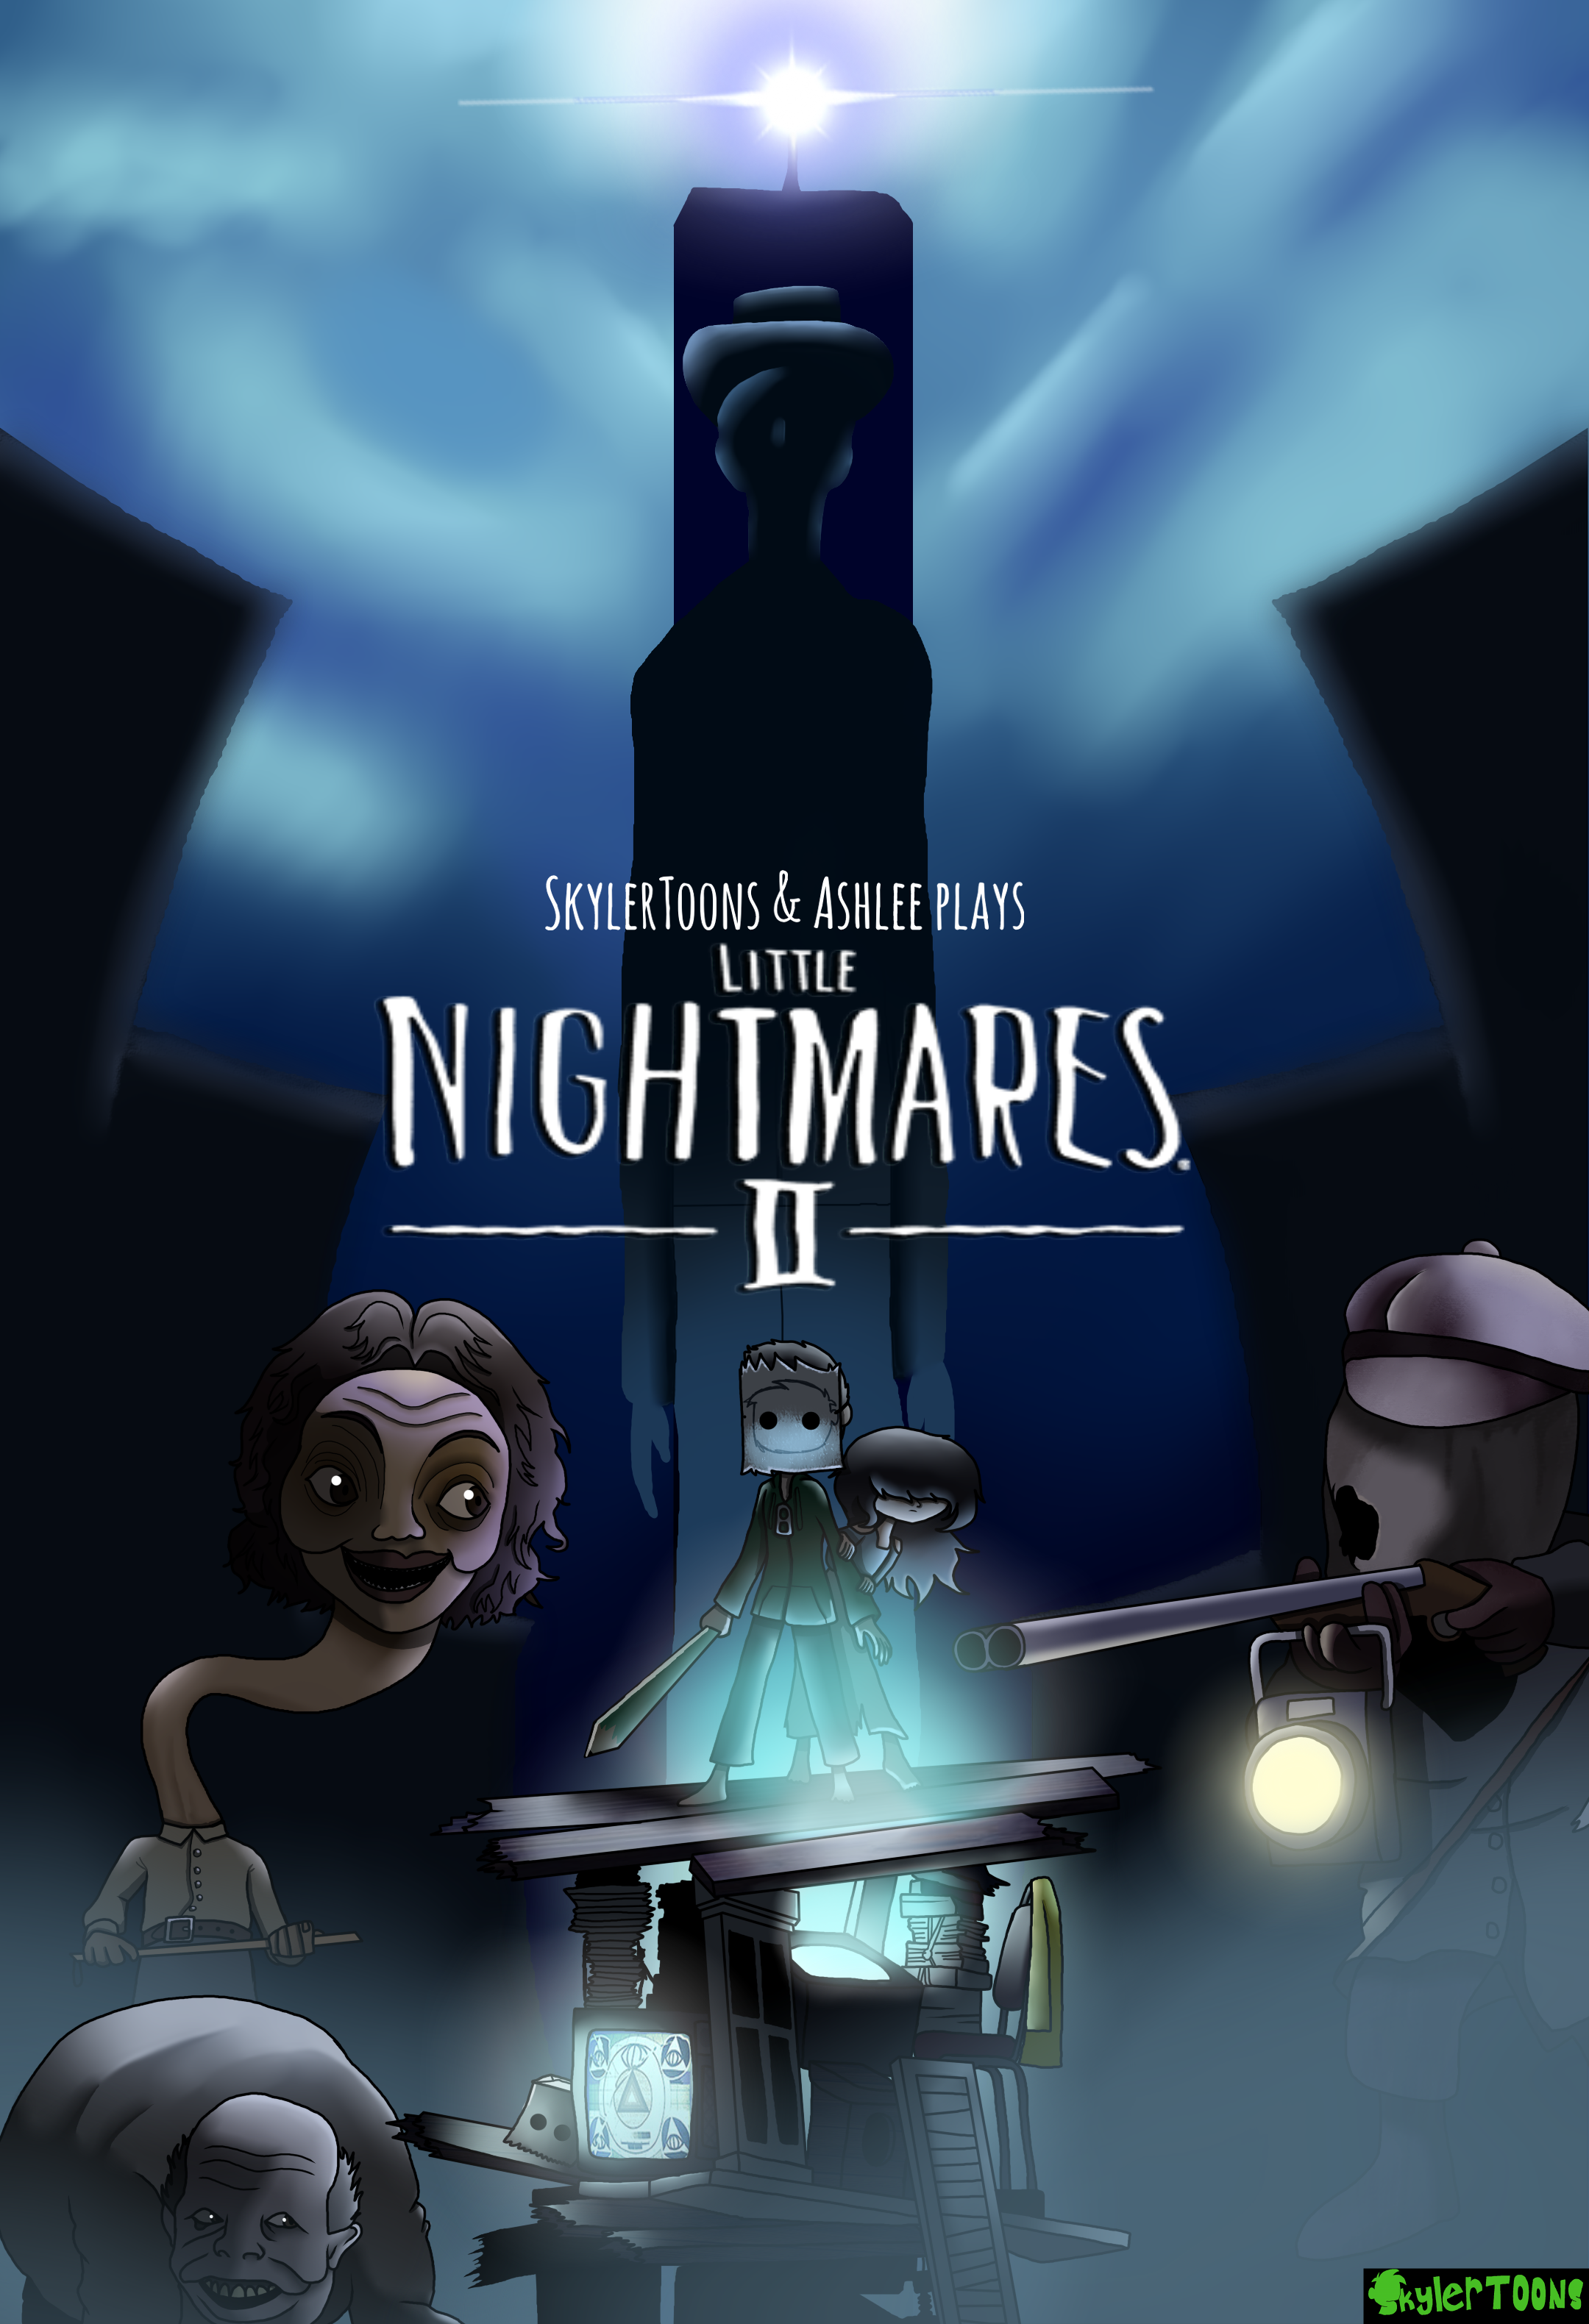 The art of Little Nightmares II by Tarsier studios